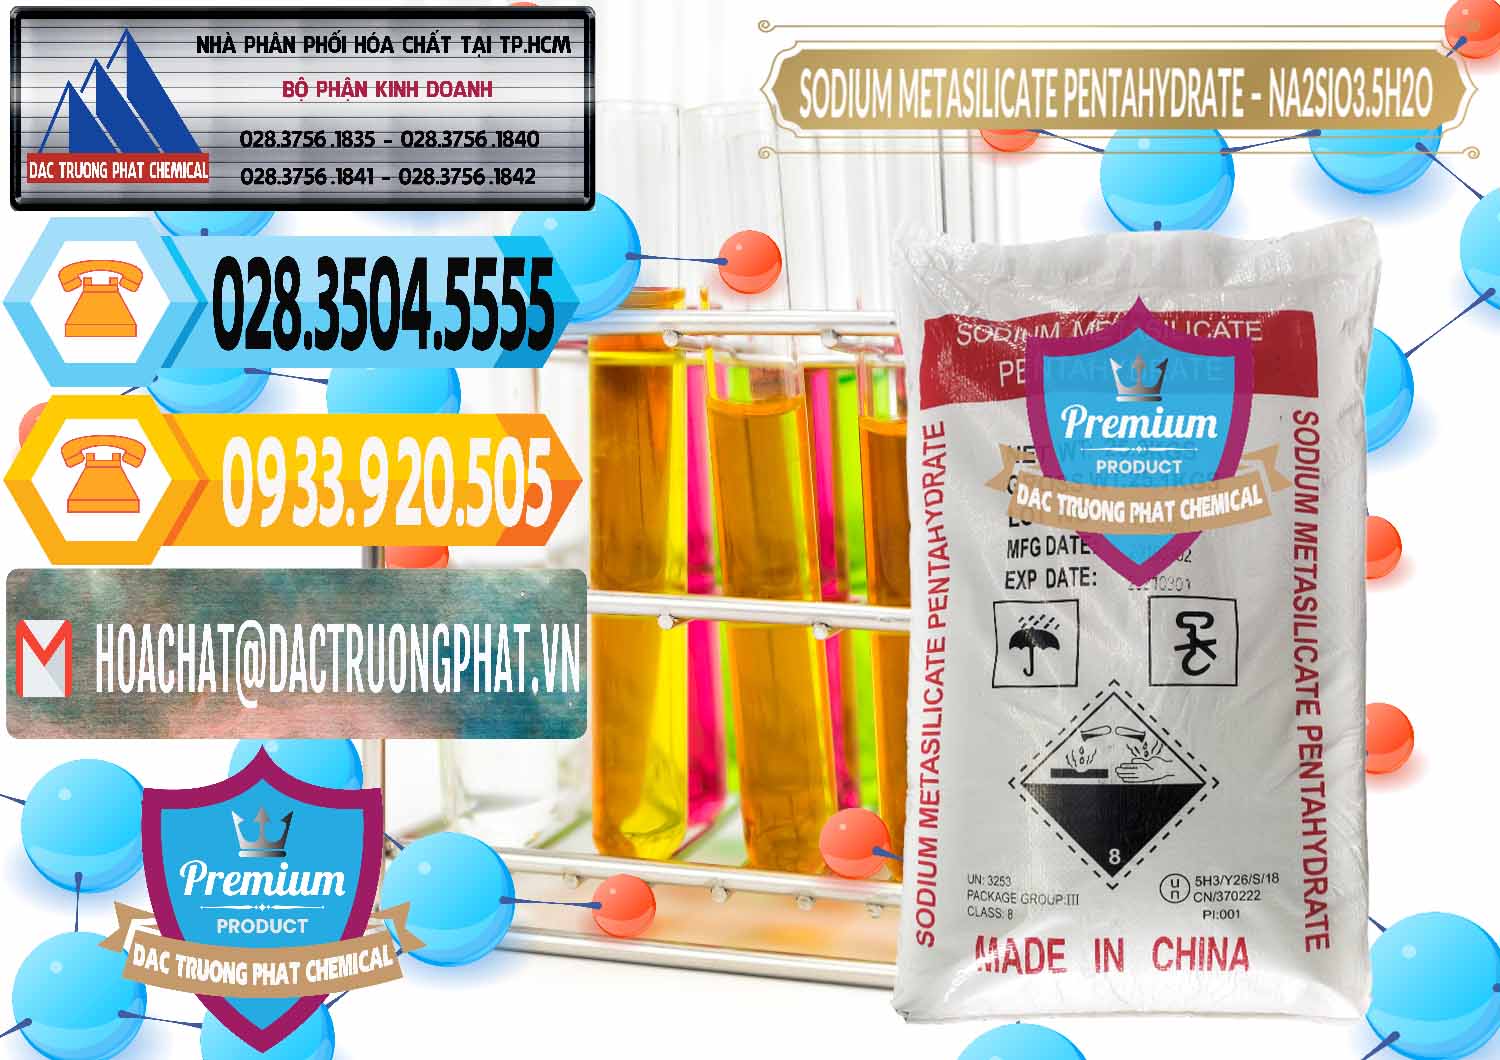 Công ty bán ( cung cấp ) Sodium Metasilicate Pentahydrate – Silicate Bột Trung Quốc China - 0147 - Cty chuyên nhập khẩu và cung cấp hóa chất tại TP.HCM - hoachattayrua.net